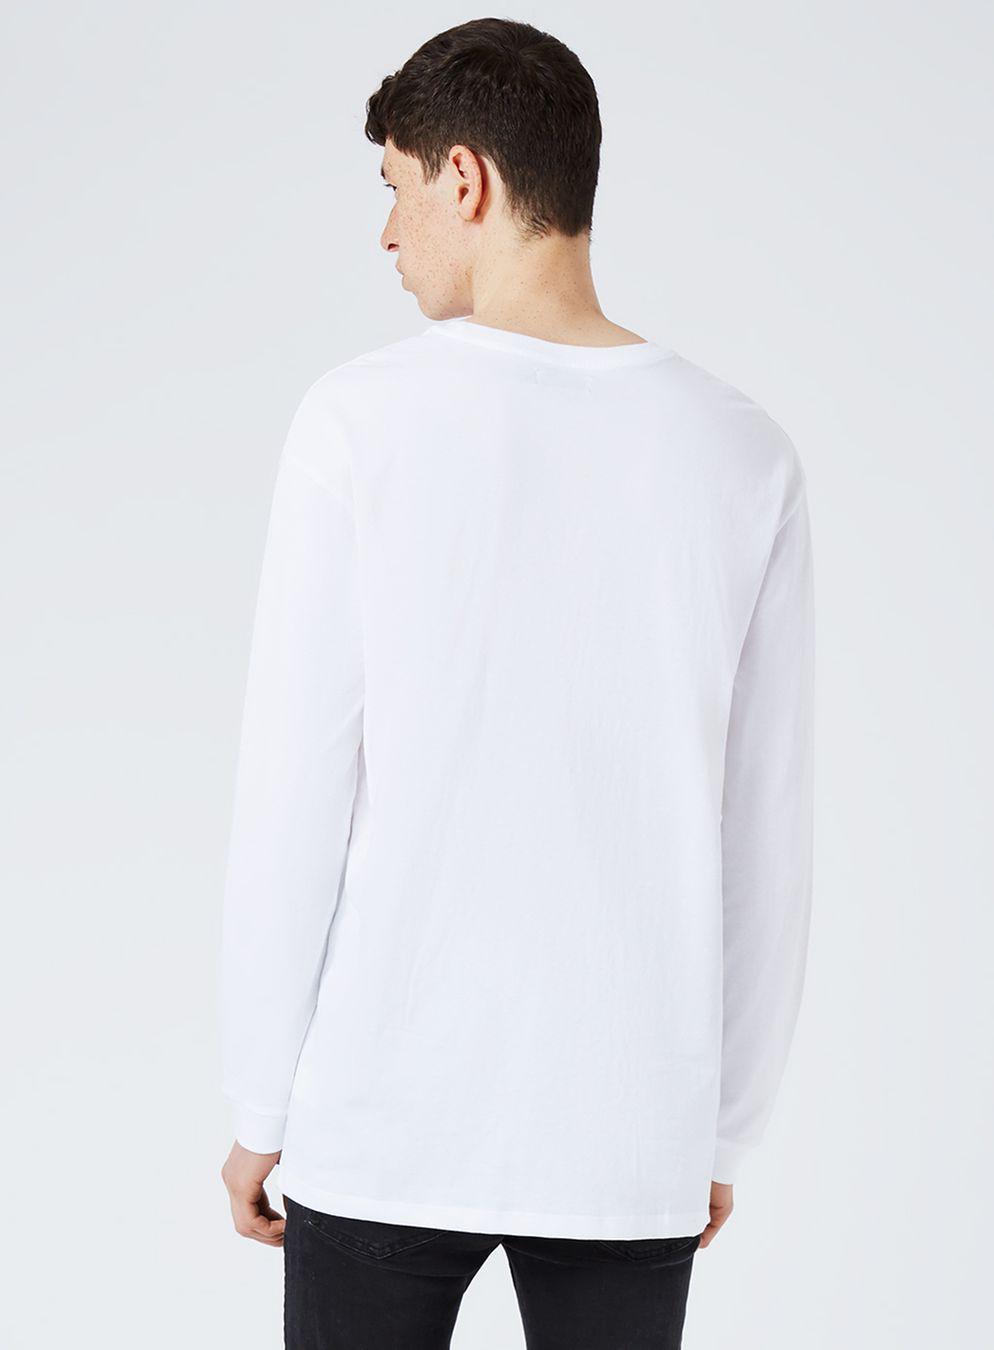 TOPMAN Cotton White Oversized Long Sleeve T-shirt for Men - Lyst